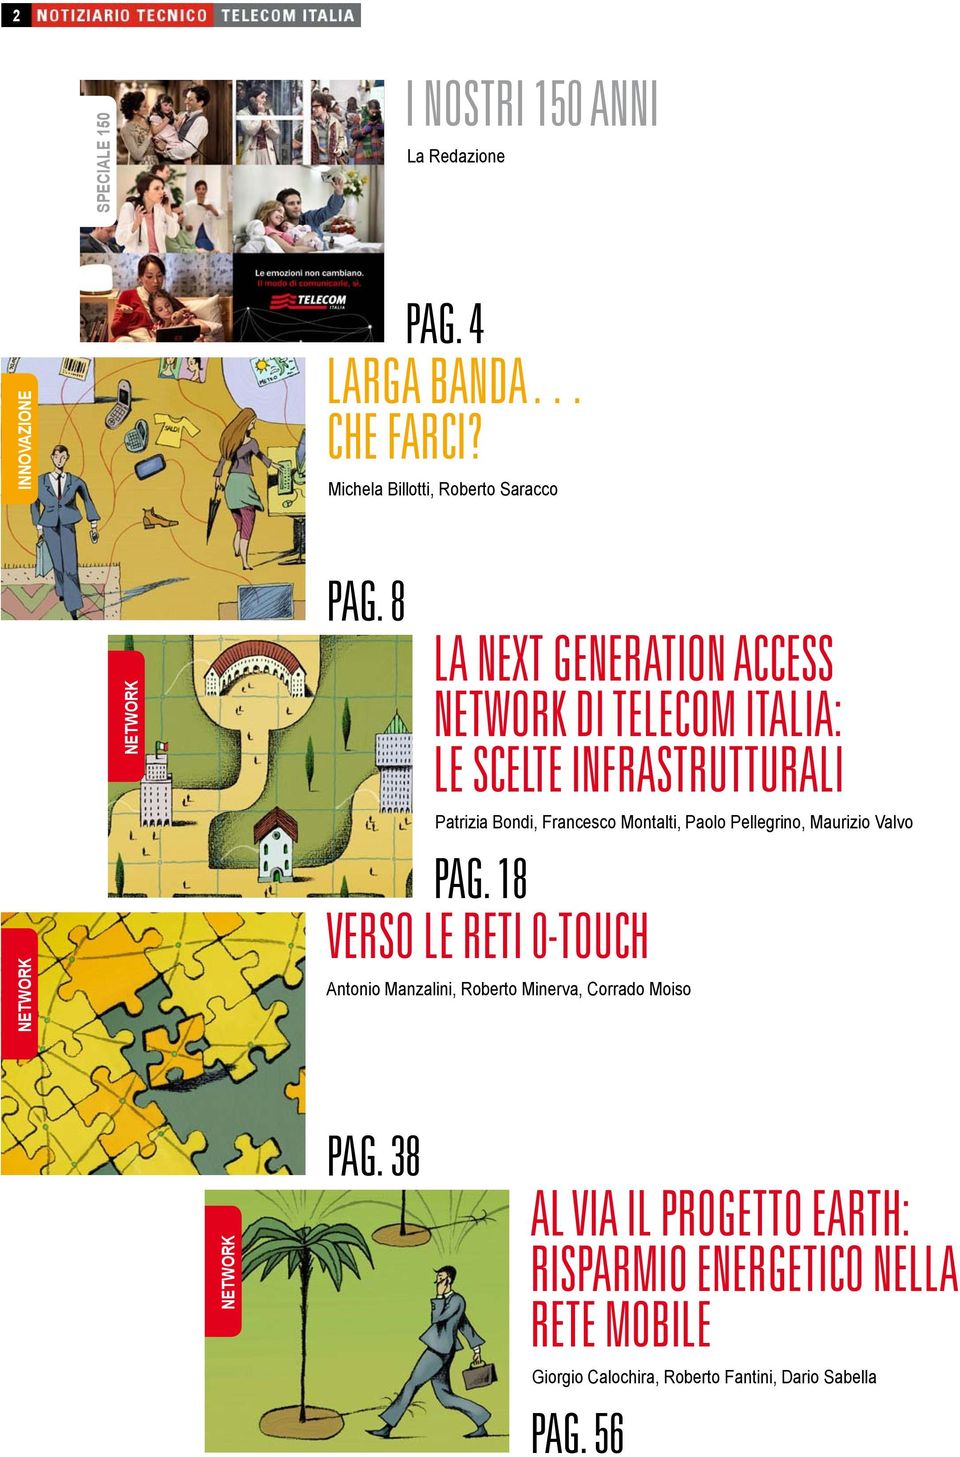 8 LA NEXT GENERATION ACCESS NETWORK DI TELECOM ITALIA: LE SCELTE INFRASTRUTTURALI Patrizia Bondi, Francesco Montalti, Paolo